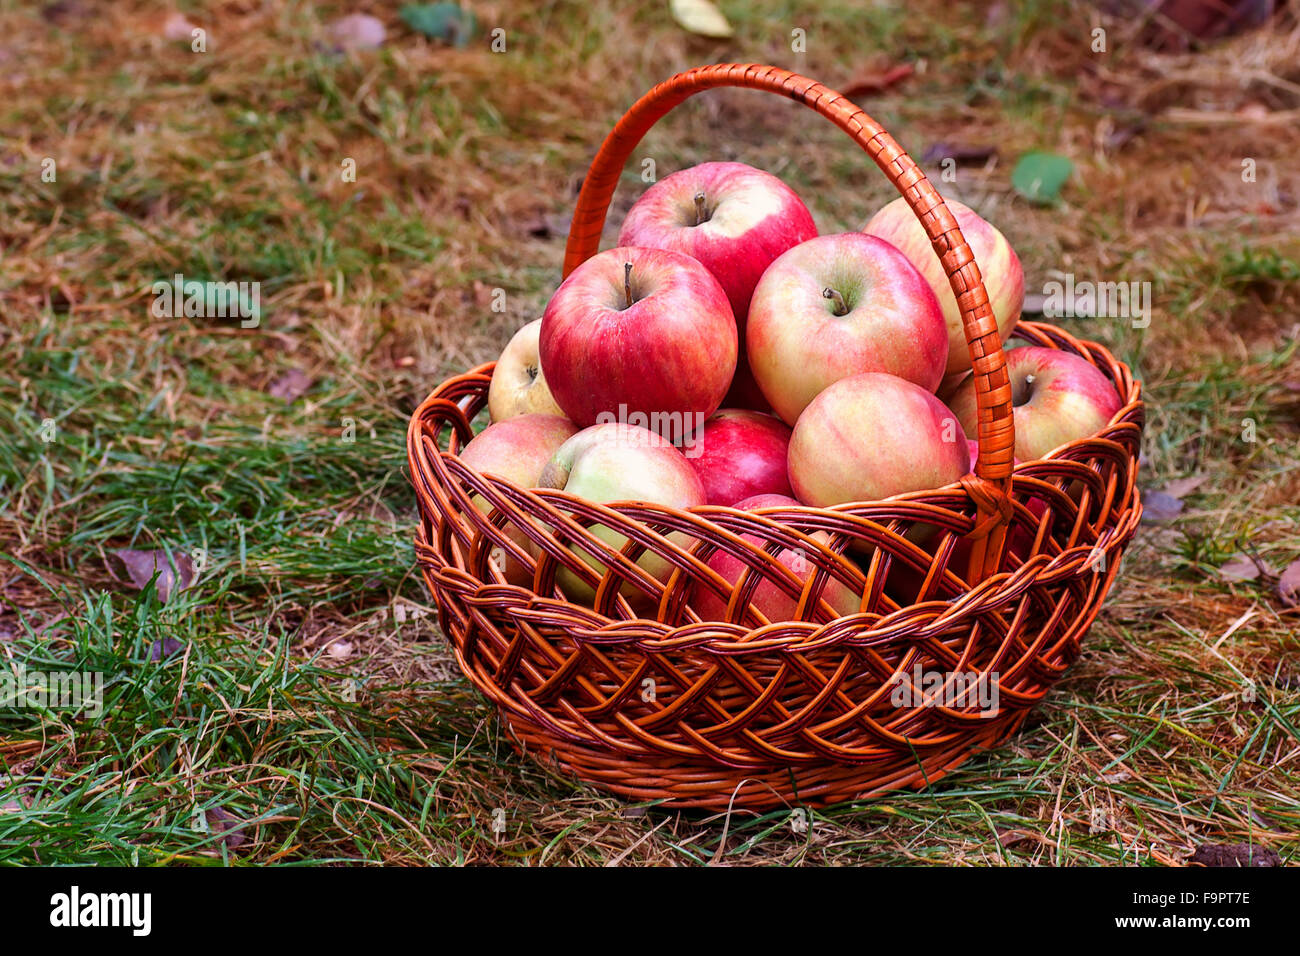 Big Red apples dans le panier sur l'herbe Banque D'Images